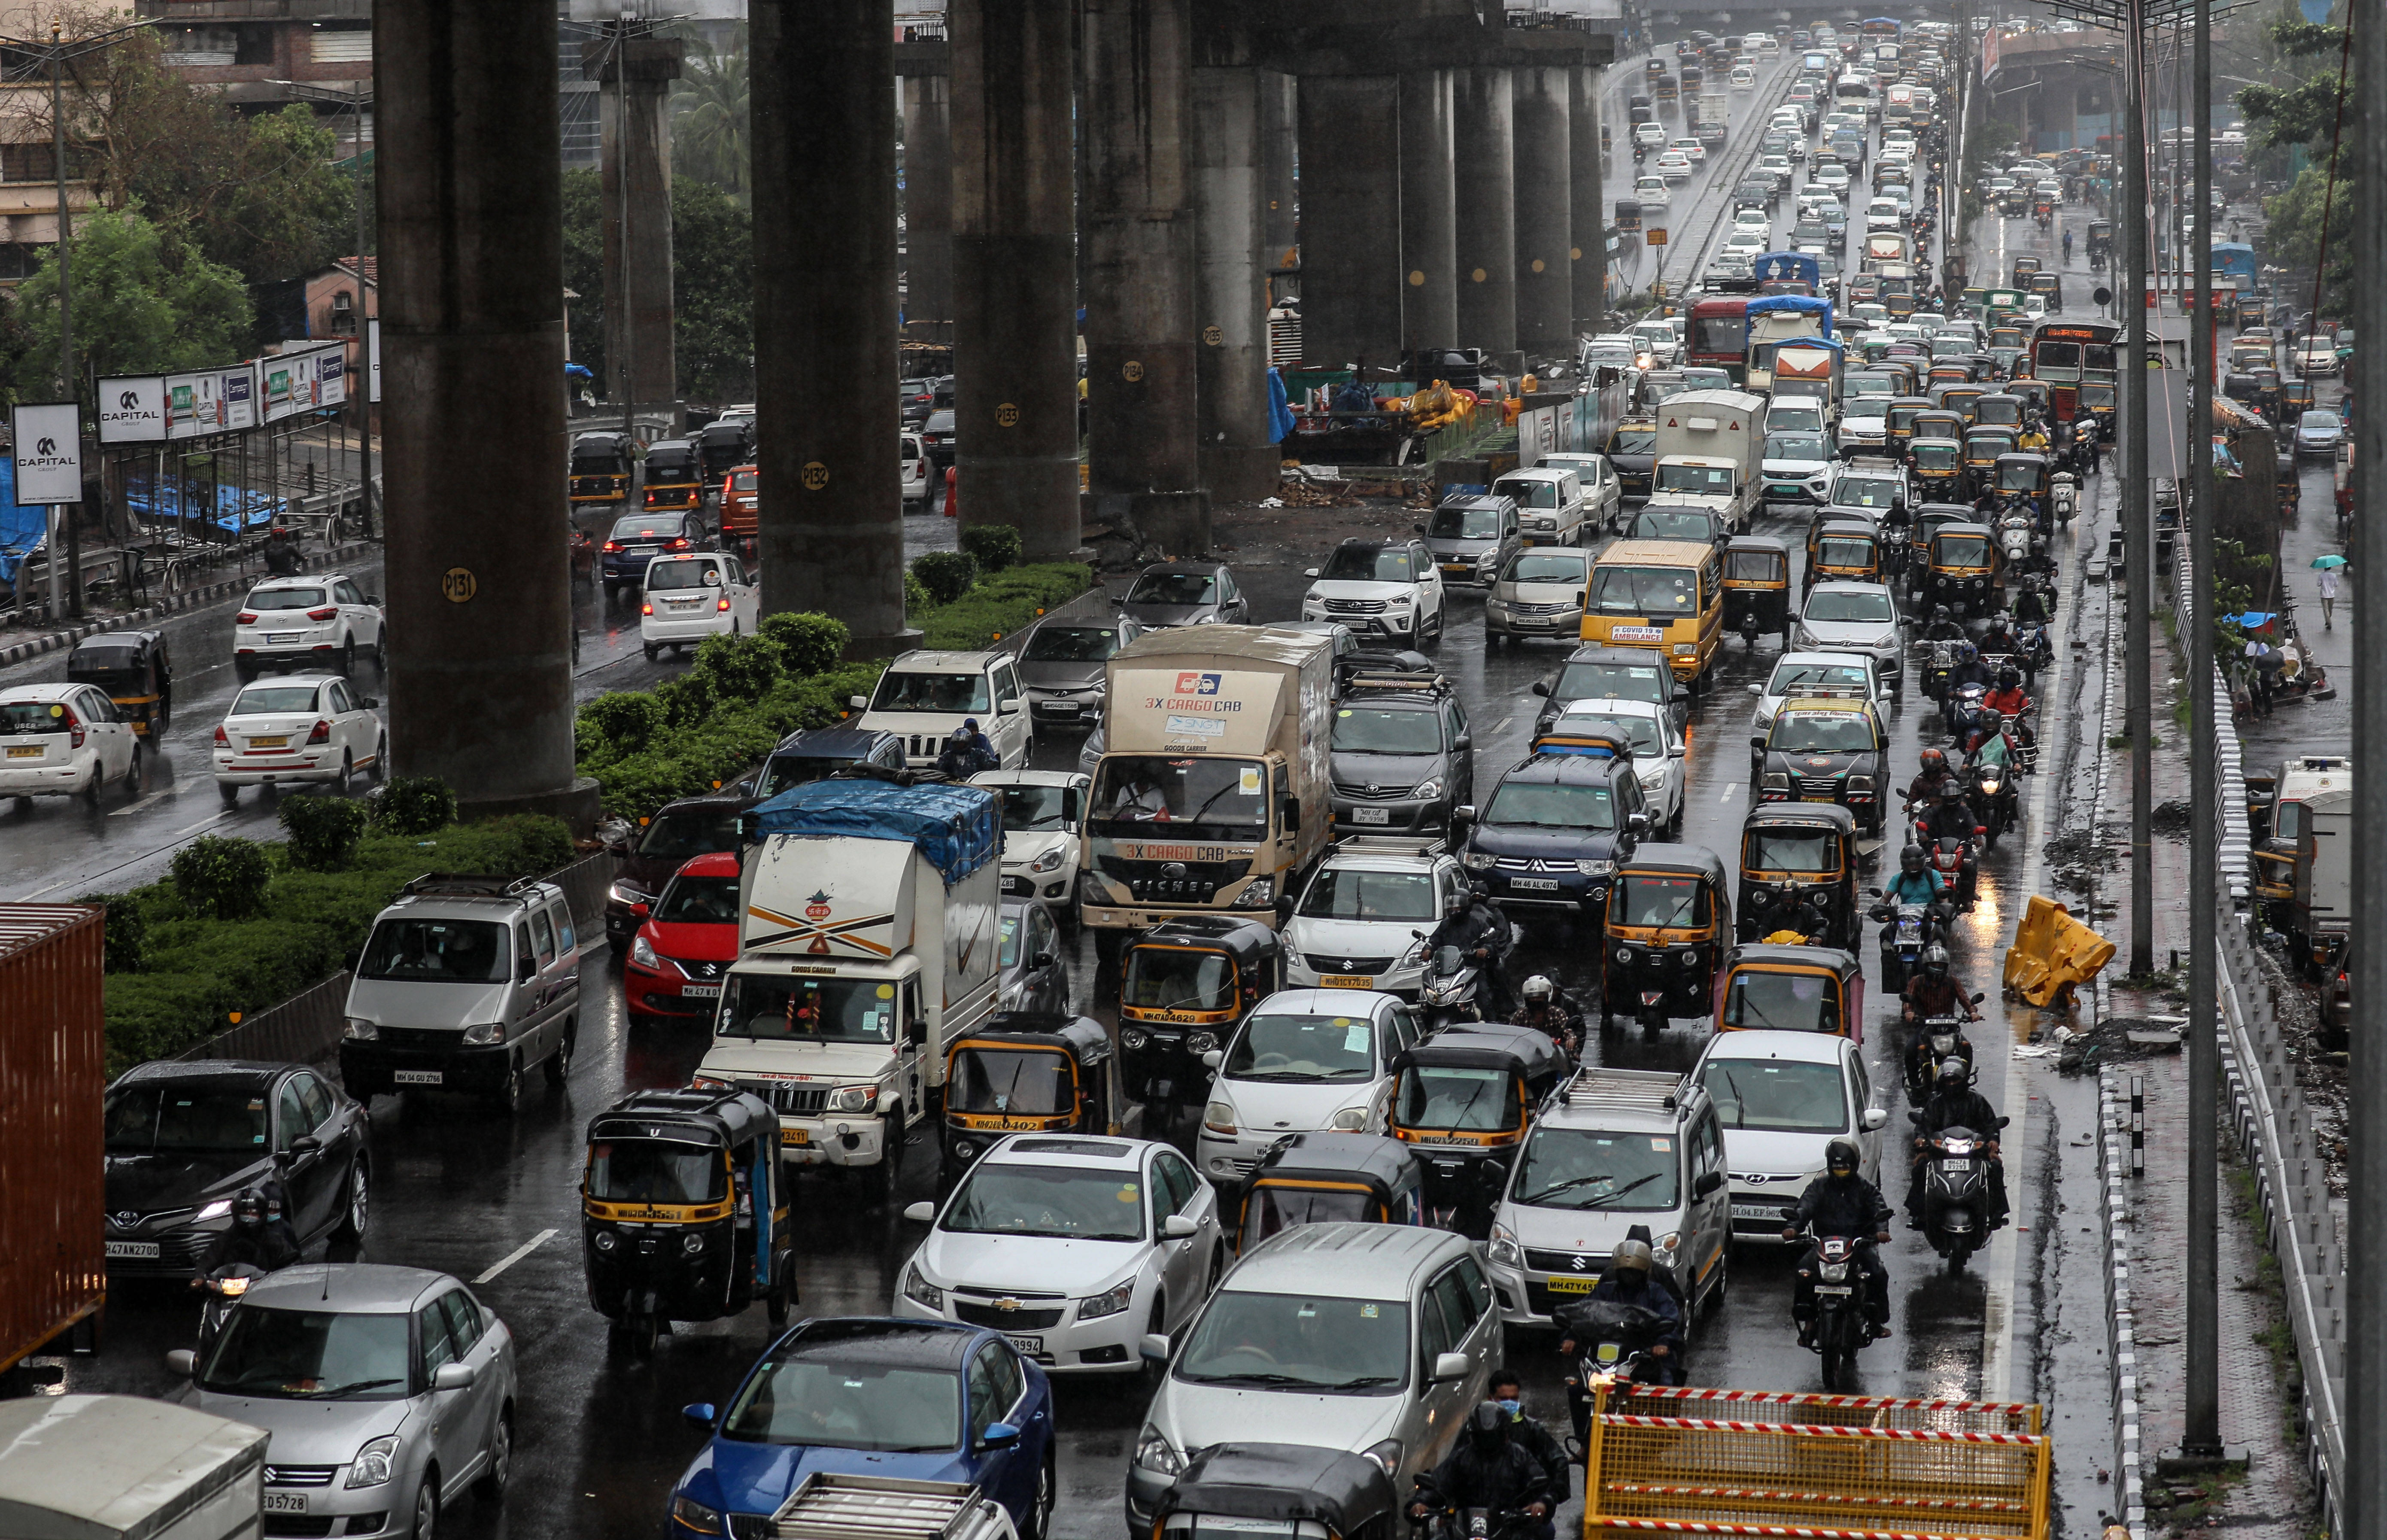 6月9日,暴雨积水导致印度孟买道路交通拥堵